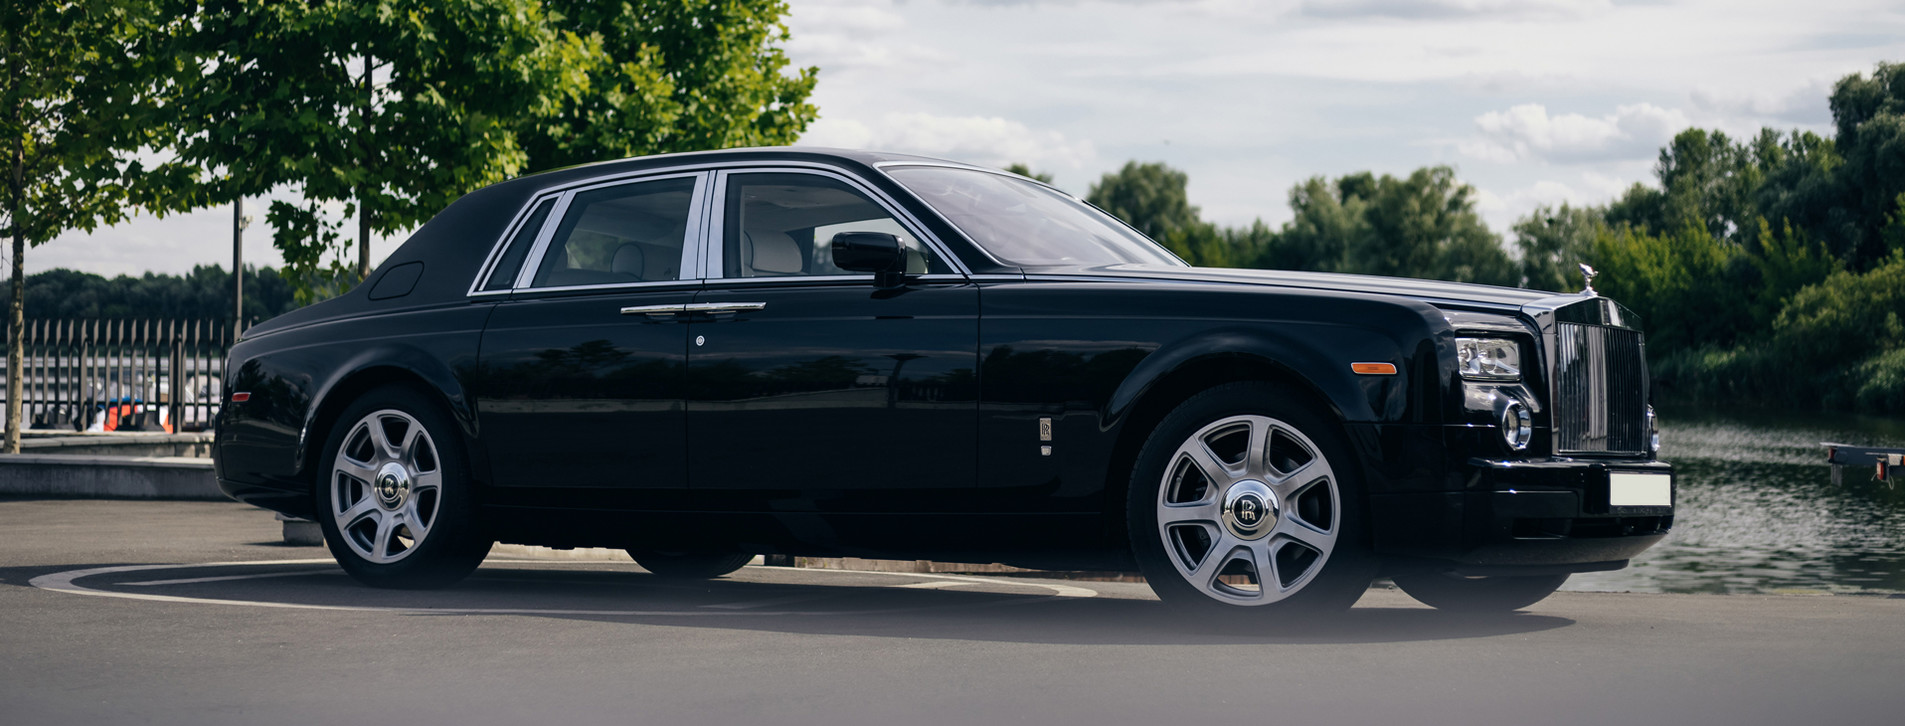 Фото 1 - Rolls-Royce Phantom із водієм